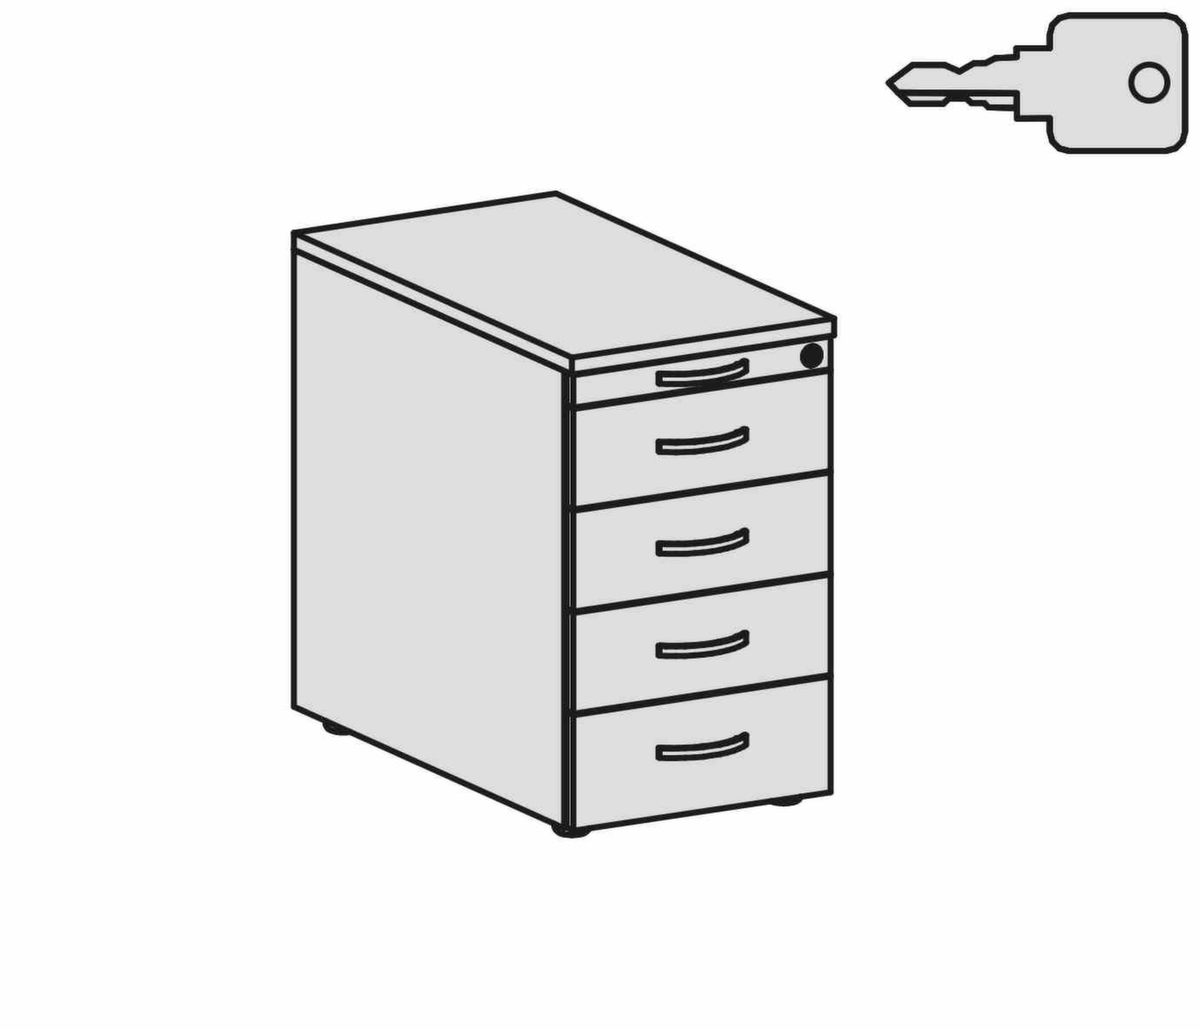 Gera Standcontainer Pro, 5 Schublade(n) Technische Zeichnung 1 ZOOM